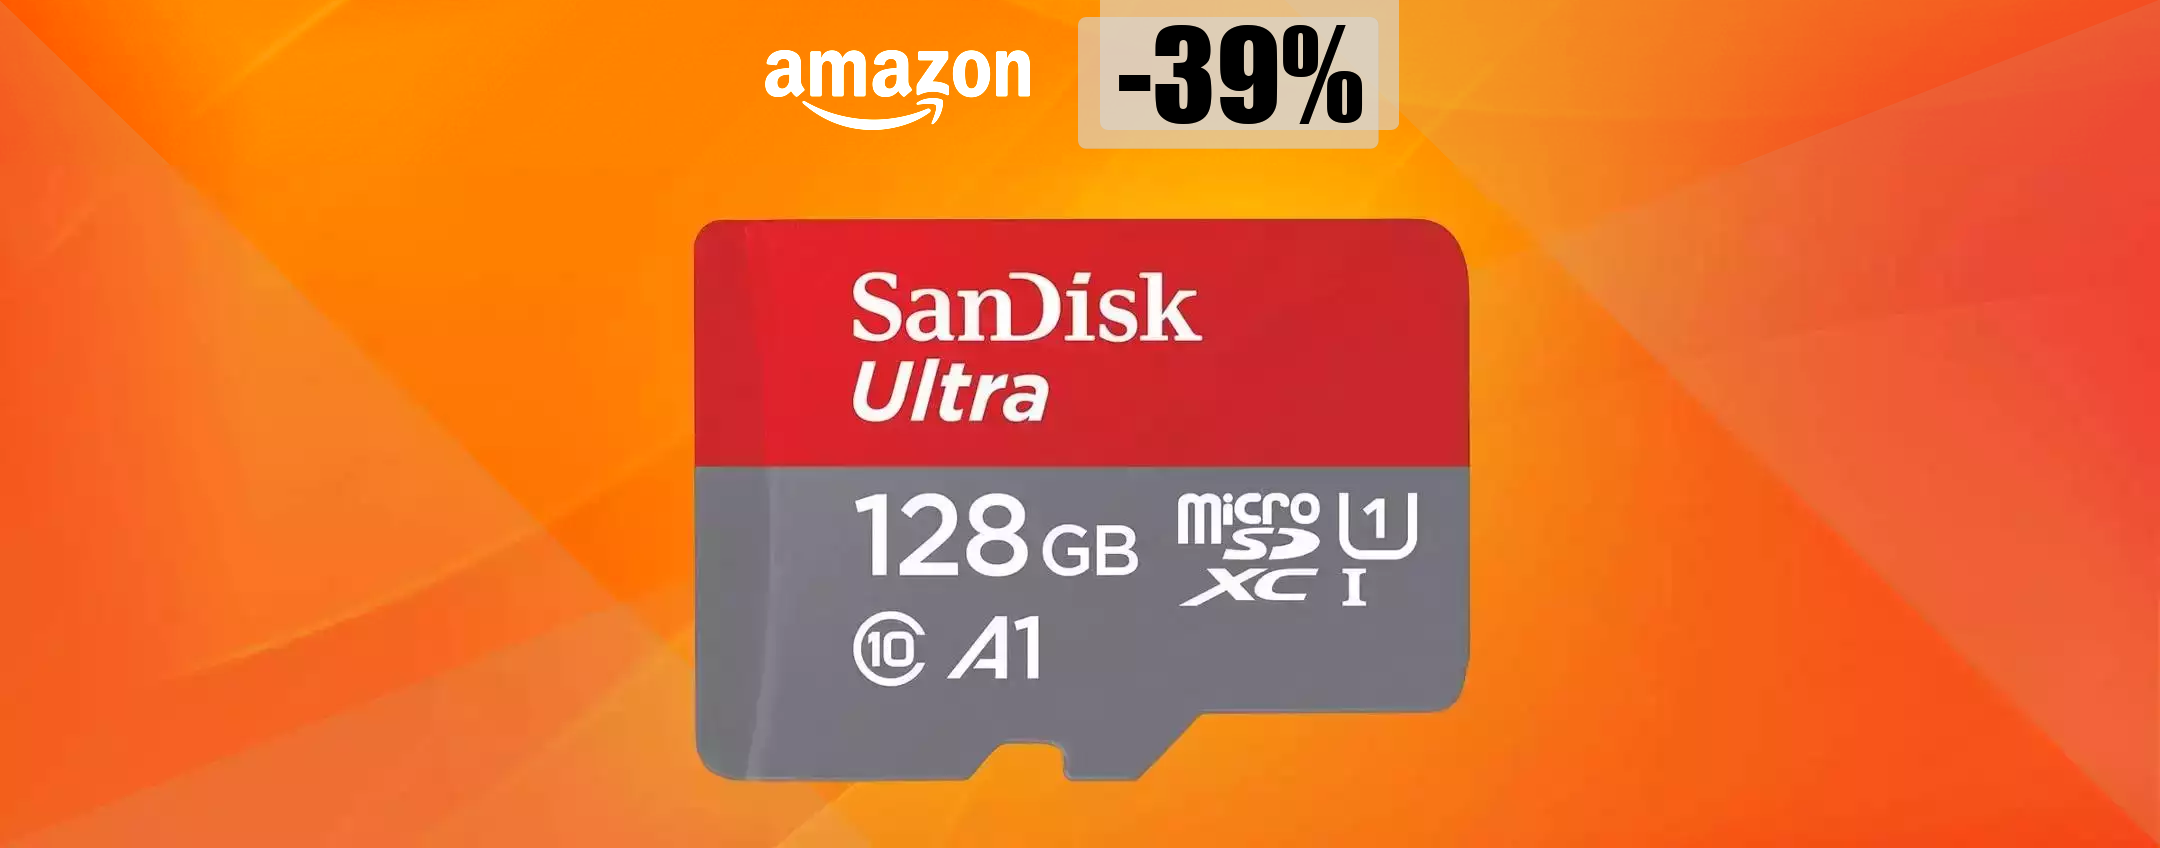 MicroSD 128GB, il PREZZO CROLLA su Amazon: tua a soli 18 euro